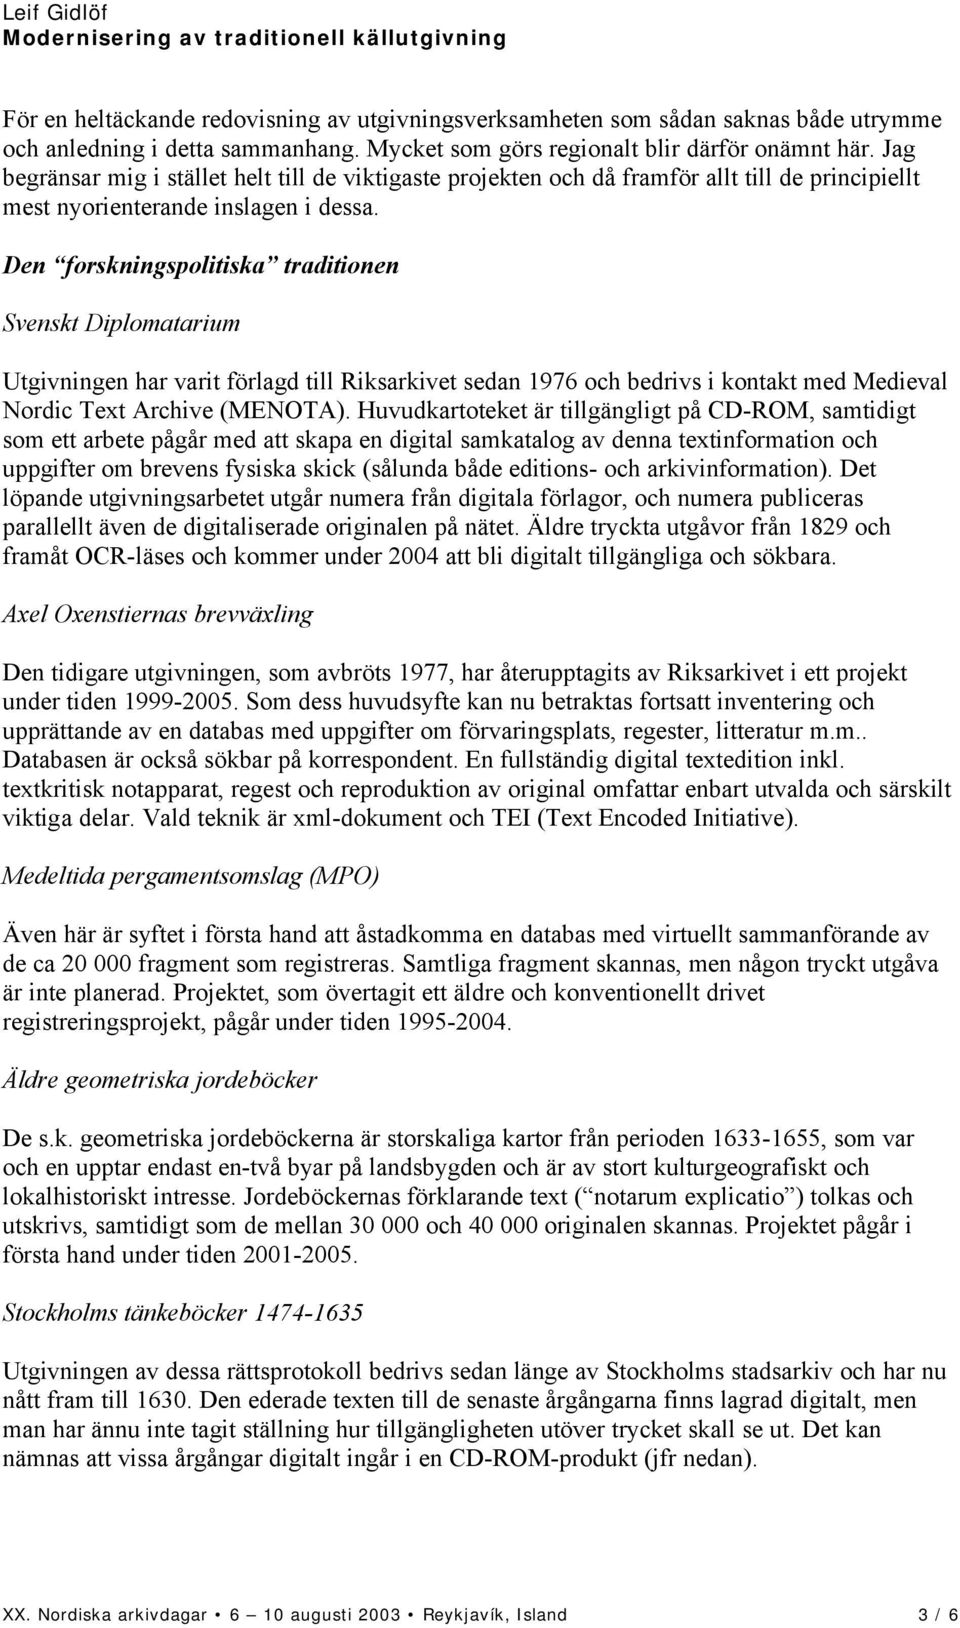 Den forskningspolitiska traditionen Svenskt Diplomatarium Utgivningen har varit förlagd till Riksarkivet sedan 1976 och bedrivs i kontakt med Medieval Nordic Text Archive (MENOTA).